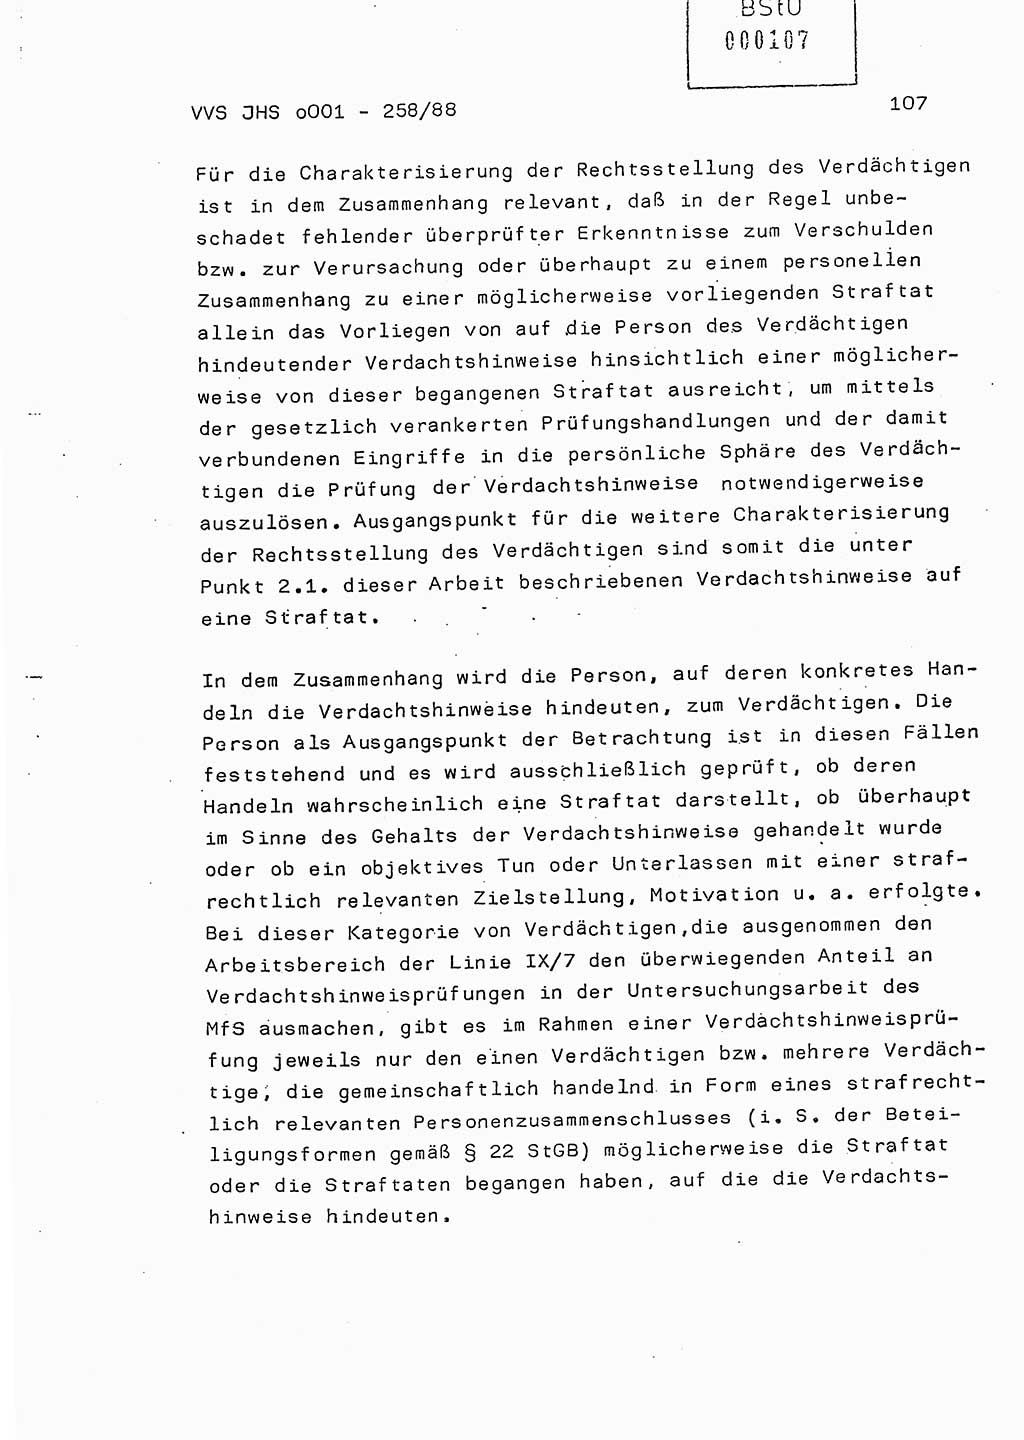 Dissertation, Oberleutnant Uwe Kärsten (JHS), Hauptmann Dr. Joachim Henkel (JHS), Oberstleutnant Werner Mählitz (Leiter der Abt. Ⅸ BV Rostock), Oberstleutnant Jürgen Tröge (HA Ⅸ/AKG), Oberstleutnant Winfried Ziegler (HA Ⅸ/9), Major Wolf-Rüdiger Wurzler (JHS), Ministerium für Staatssicherheit (MfS) [Deutsche Demokratische Republik (DDR)], Juristische Hochschule (JHS), Vertrauliche Verschlußsache (VVS) o001-258/88, Potsdam 1988, Seite 107 (Diss. MfS DDR JHS VVS o001-258/88 1988, S. 107)